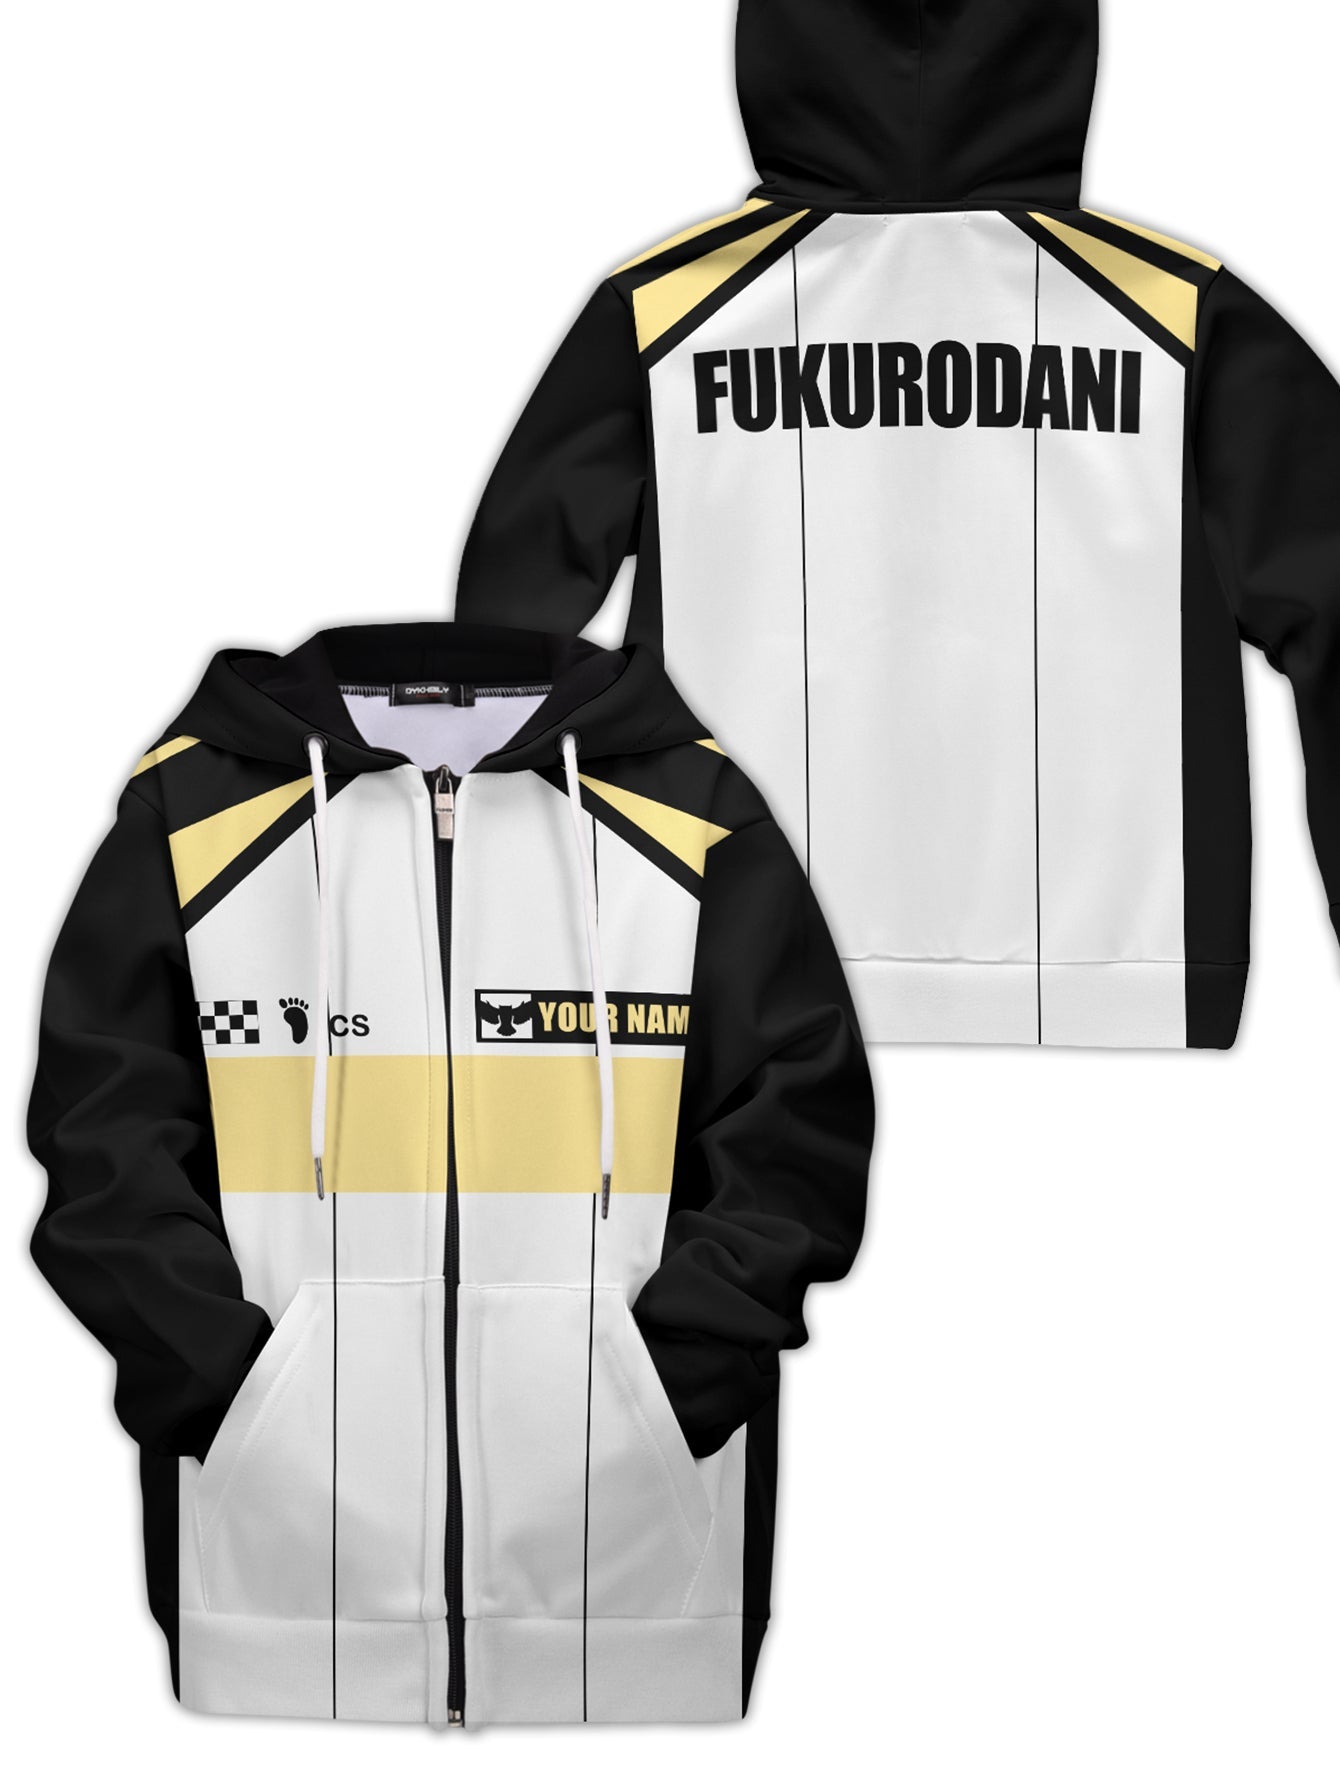 Fandomaniax - Personalized F1 Fukurodani Kids Unisex Zipped Hoodie